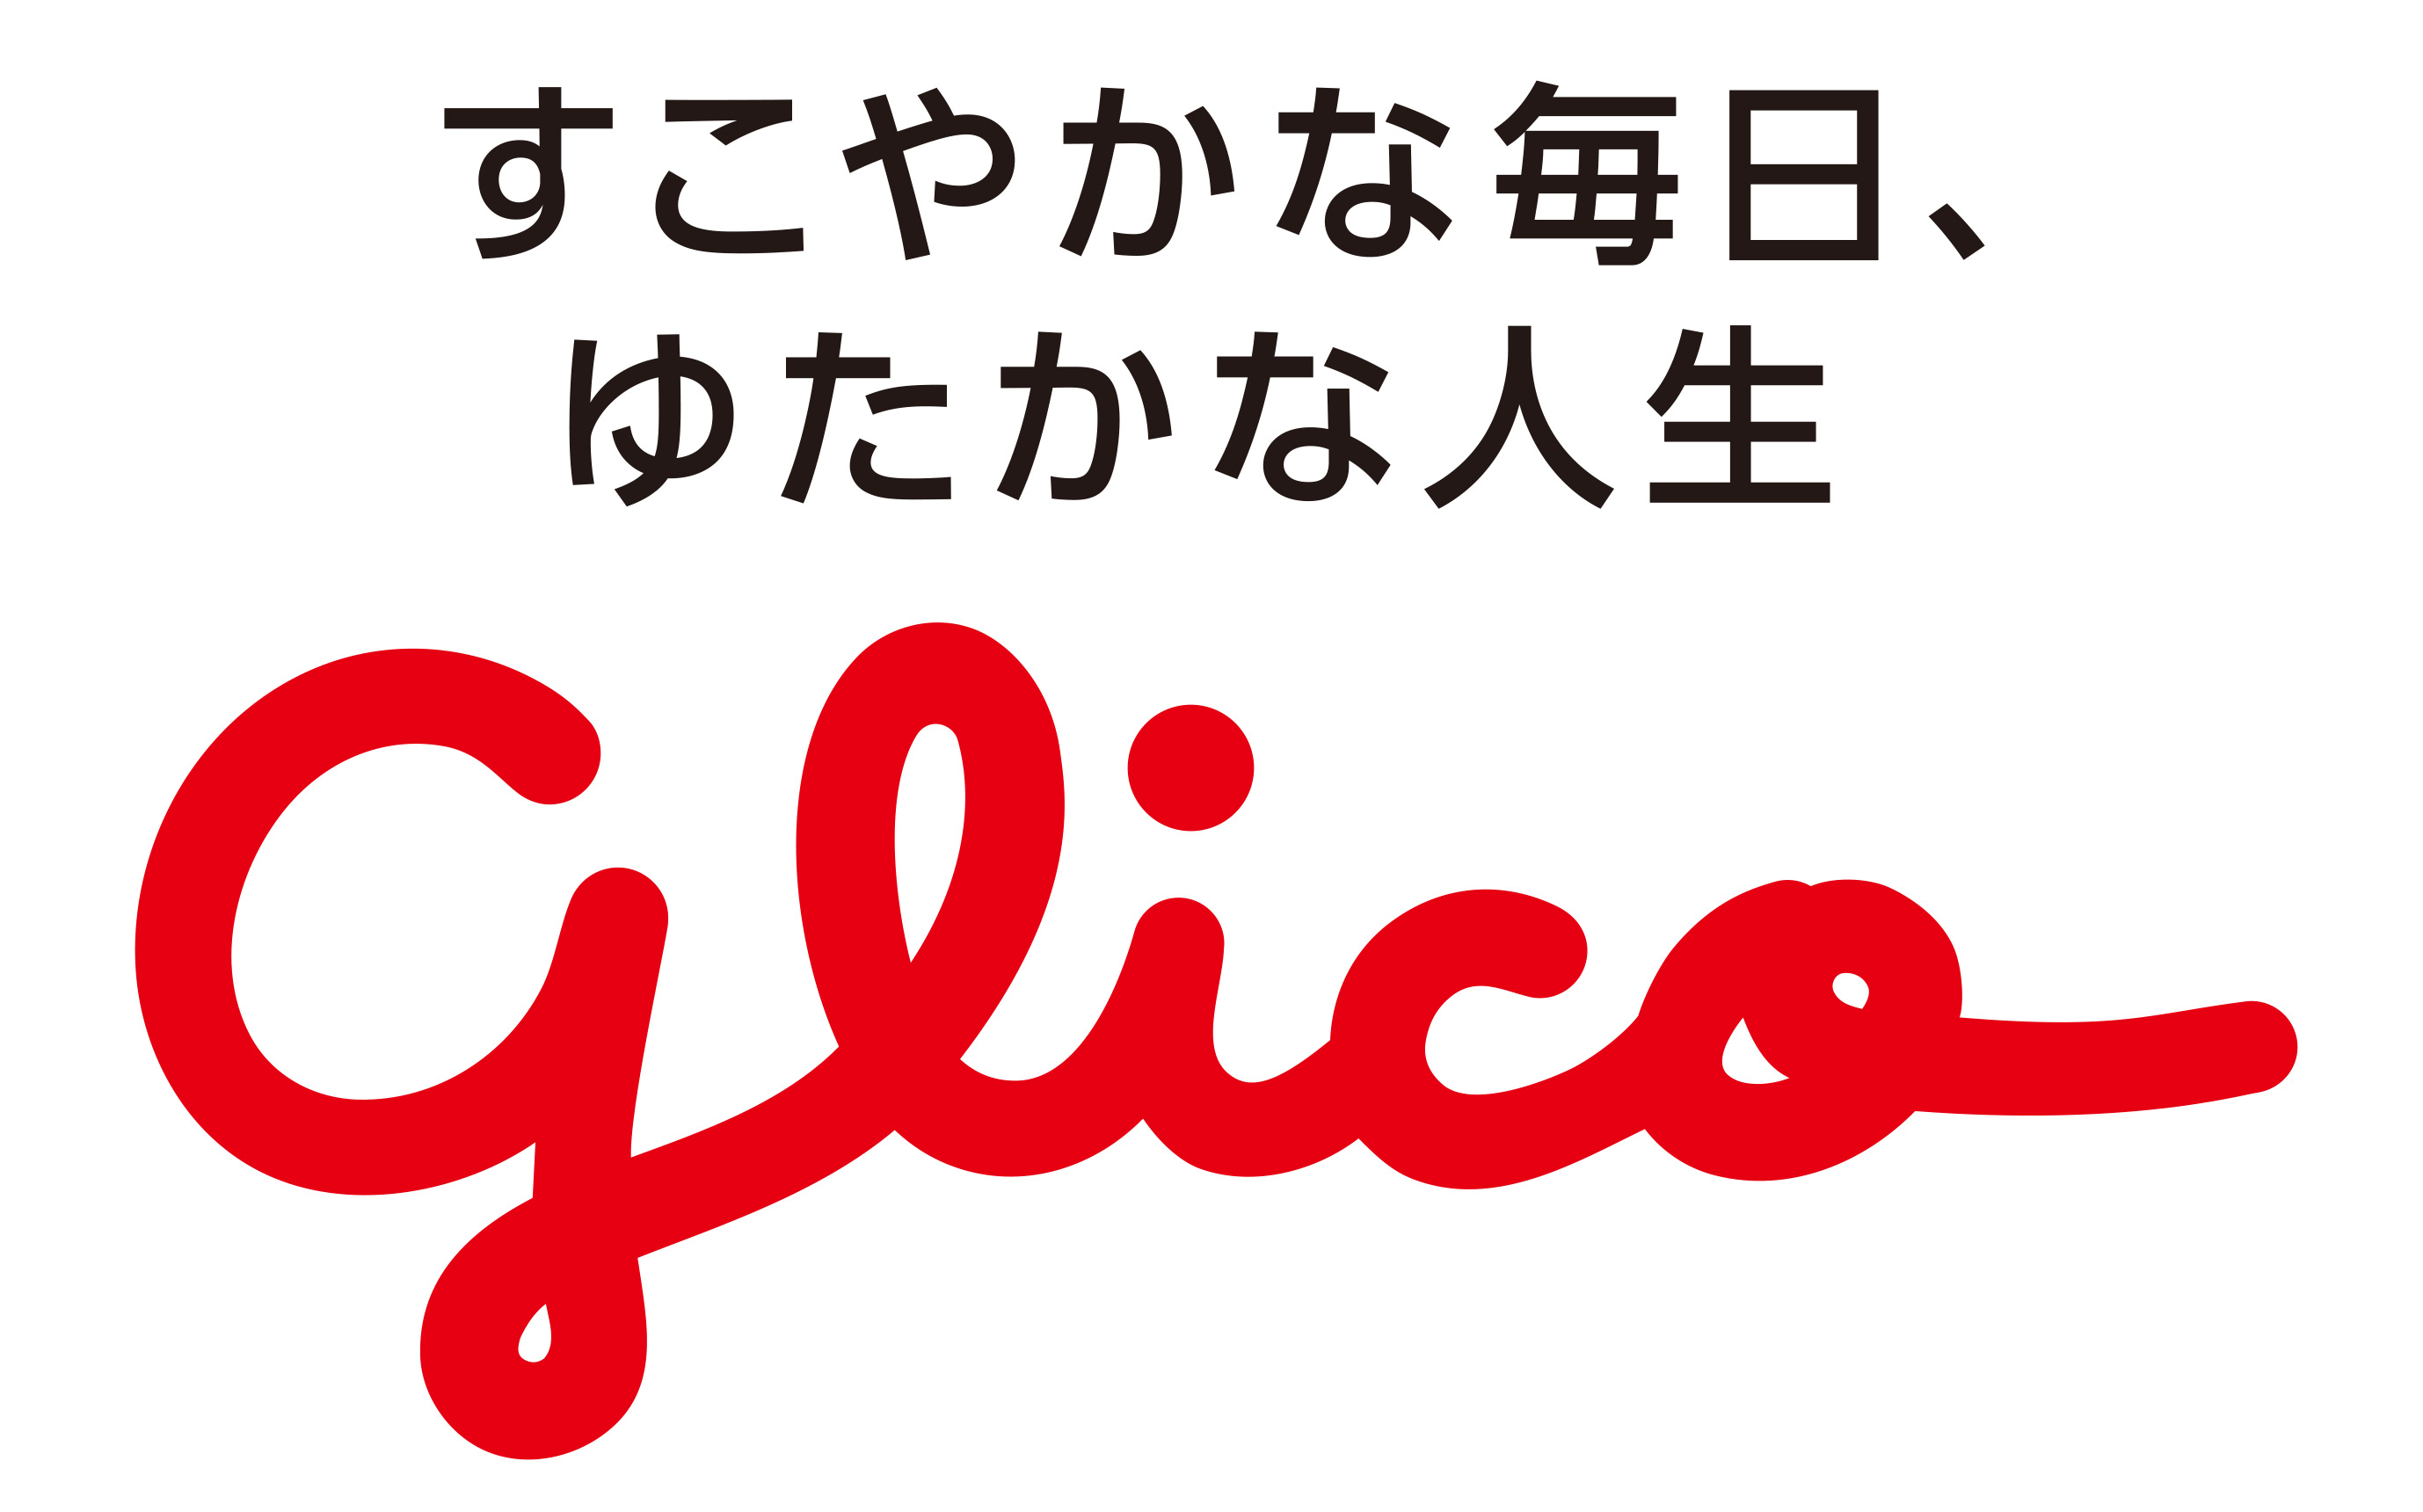 glico logo